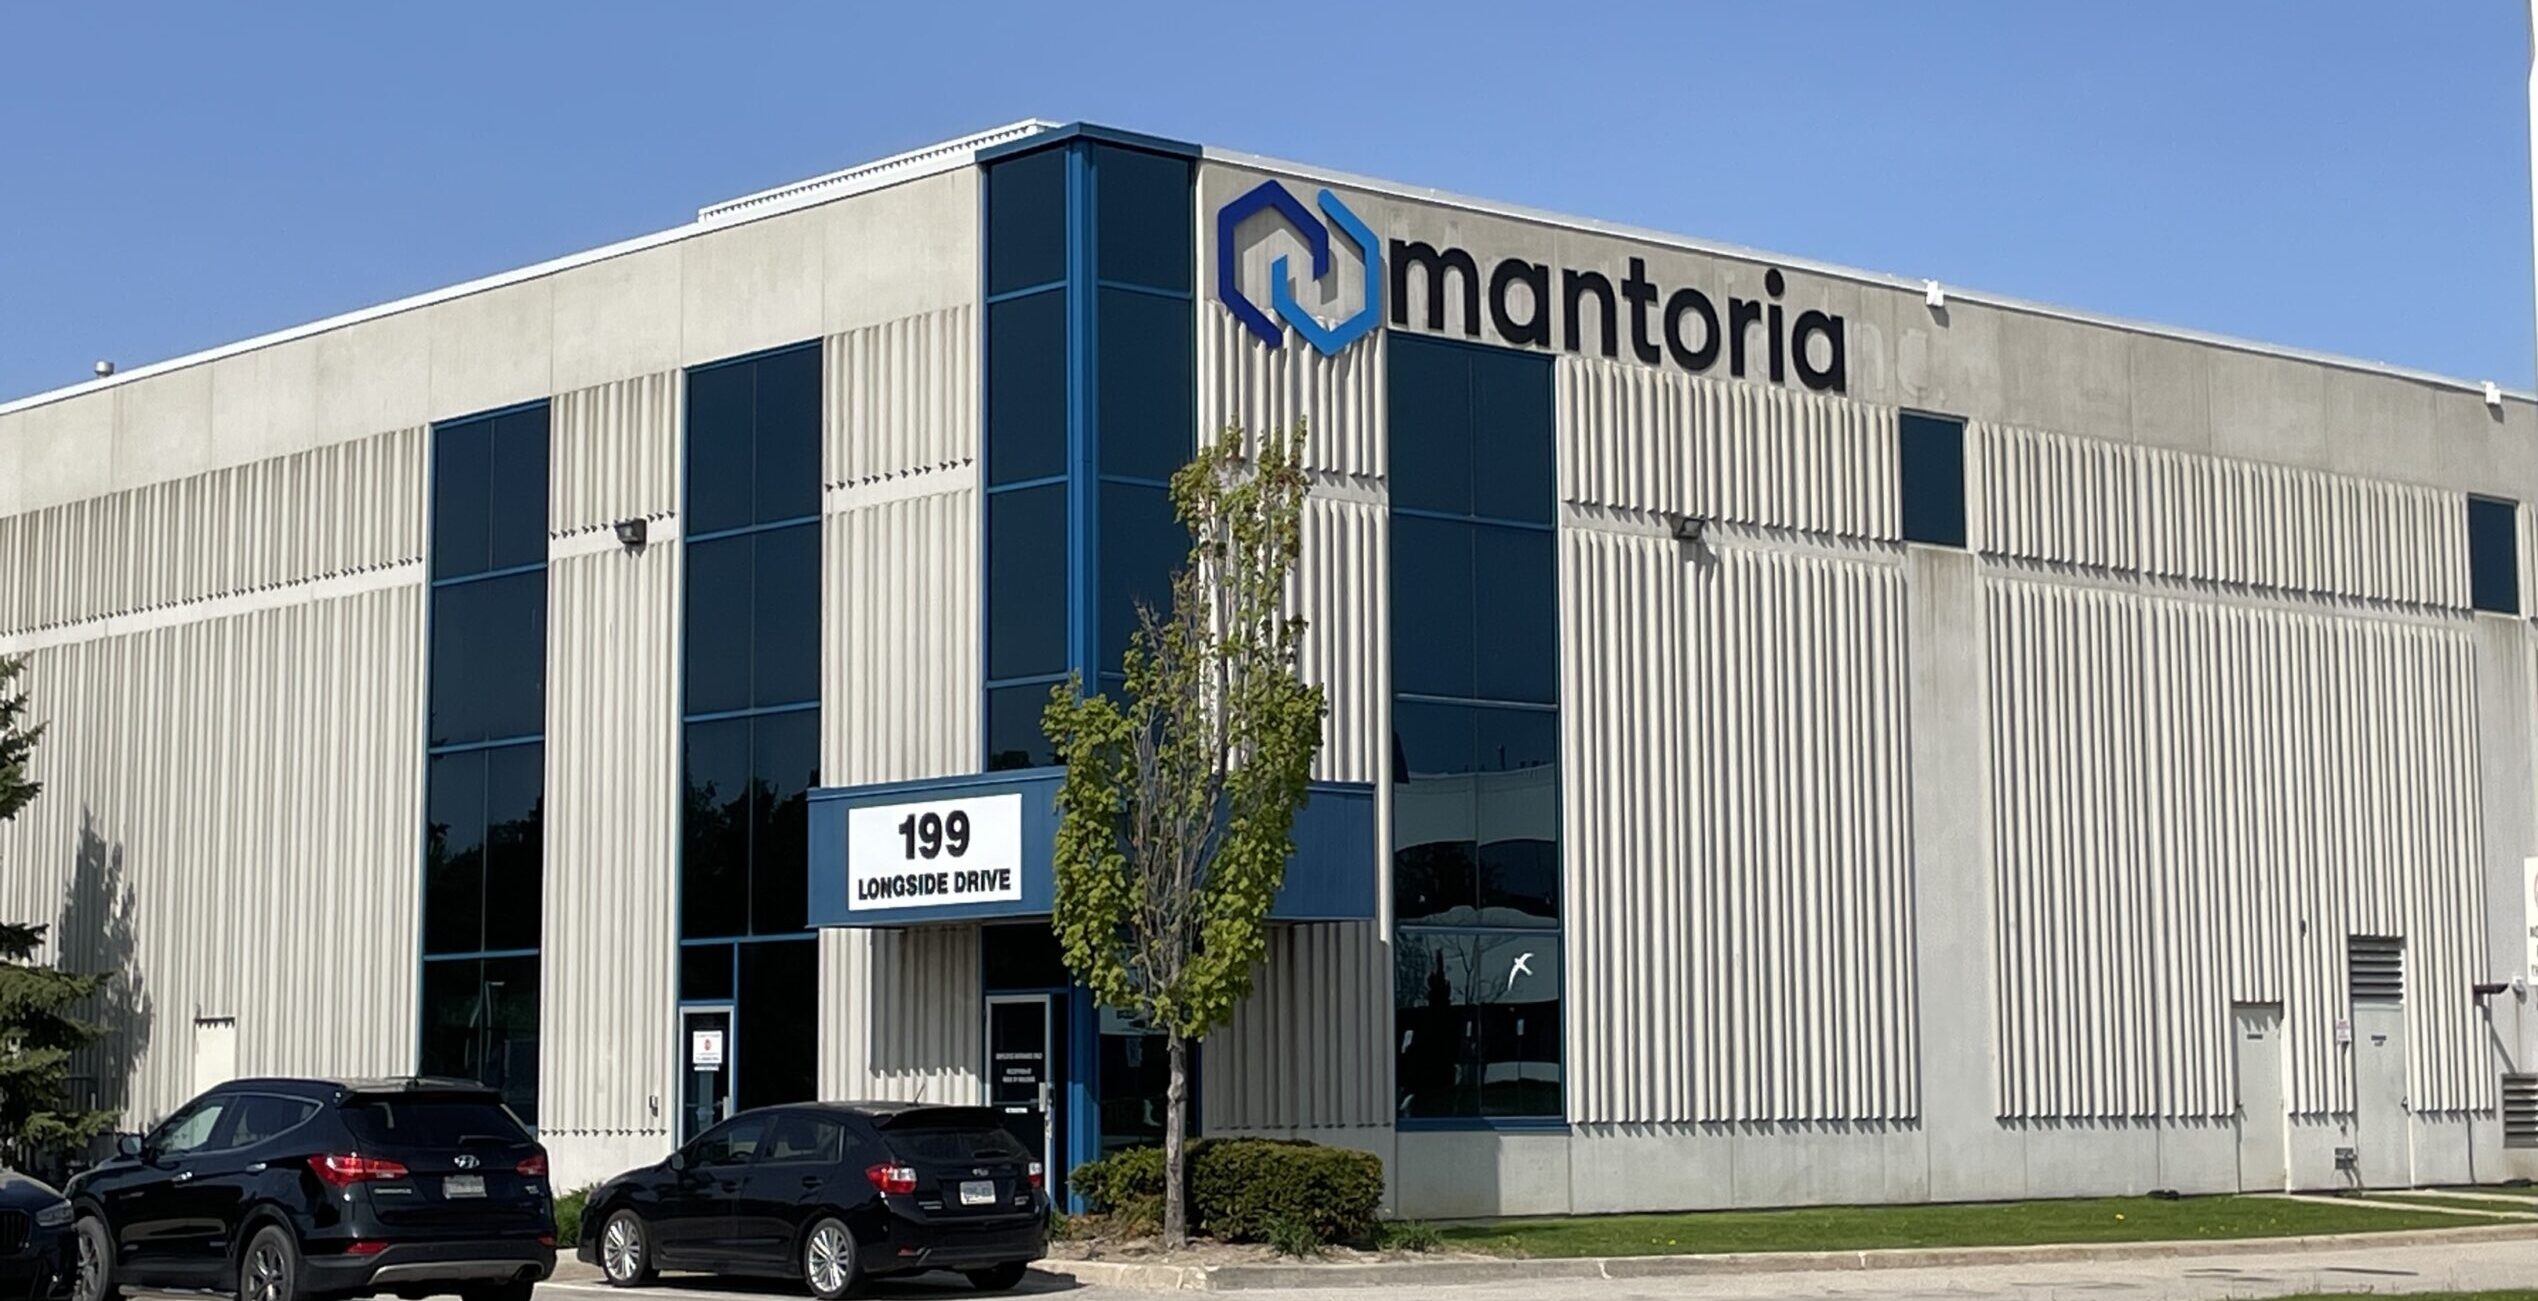 Mantoria Toronto